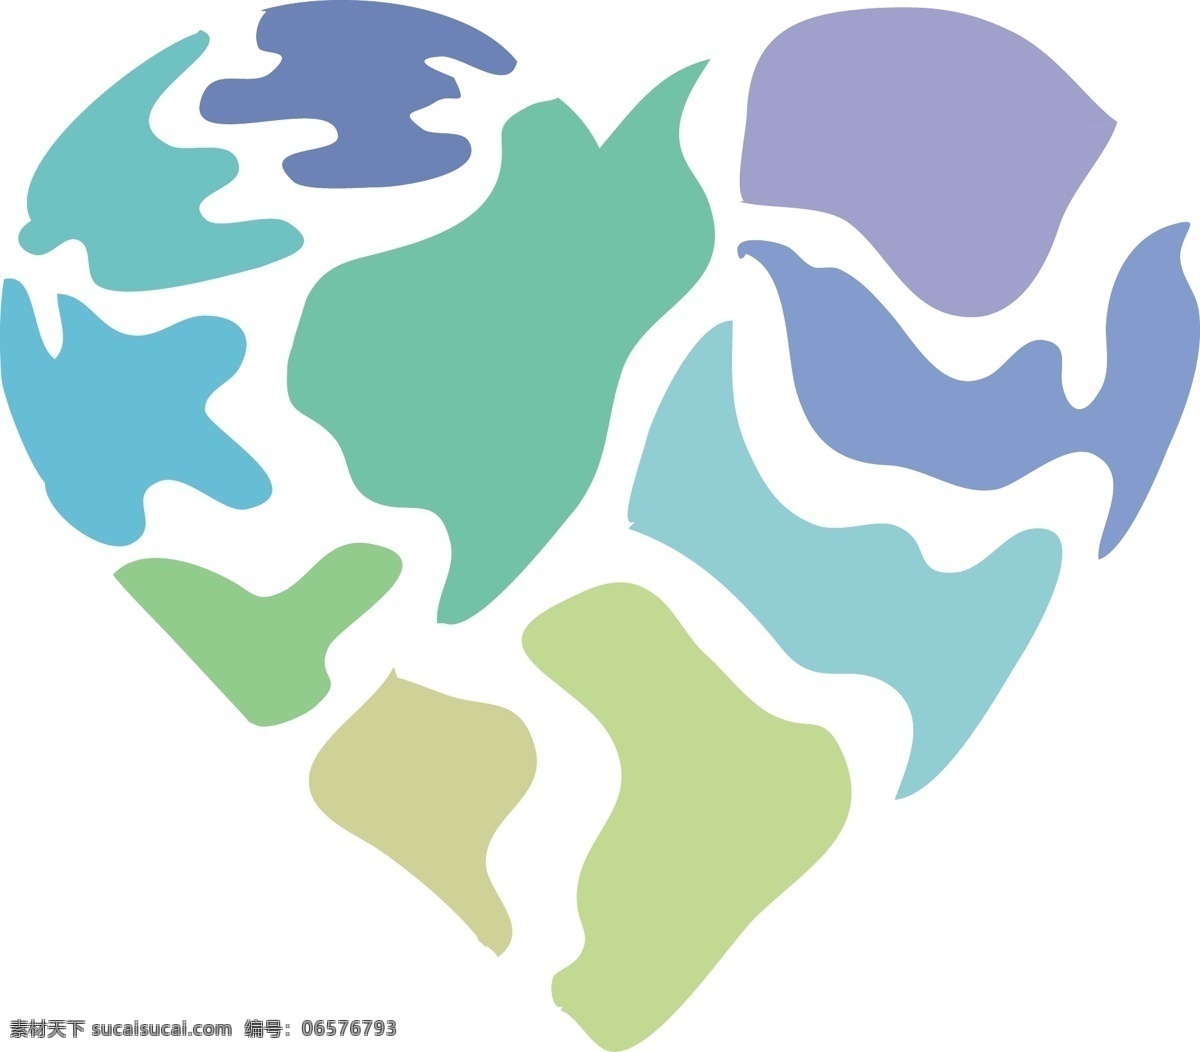 清新 迷彩 地图 拼图 爱心 图案 冷色 图标 绿色 生态 地球 陆地 拼接 碎片 环保 蓝色 logo